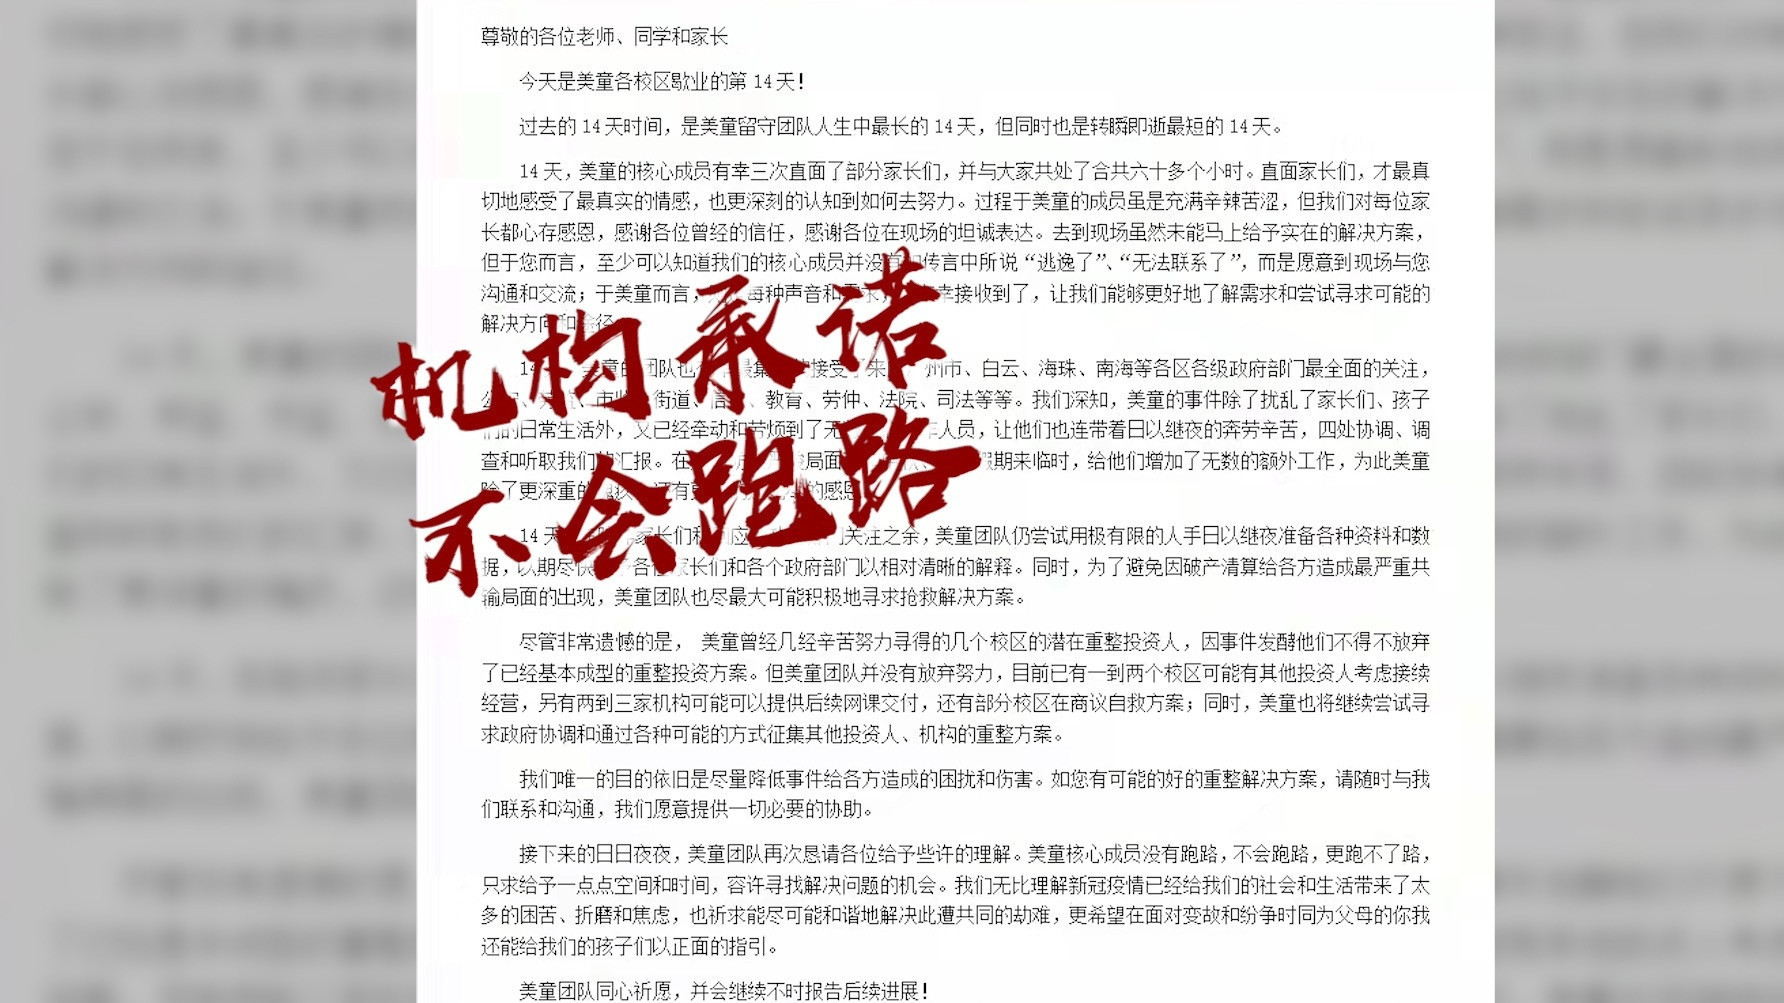 广州美童说英语称不会跑路, 海珠区教育局: 其海珠校区没有办学许可